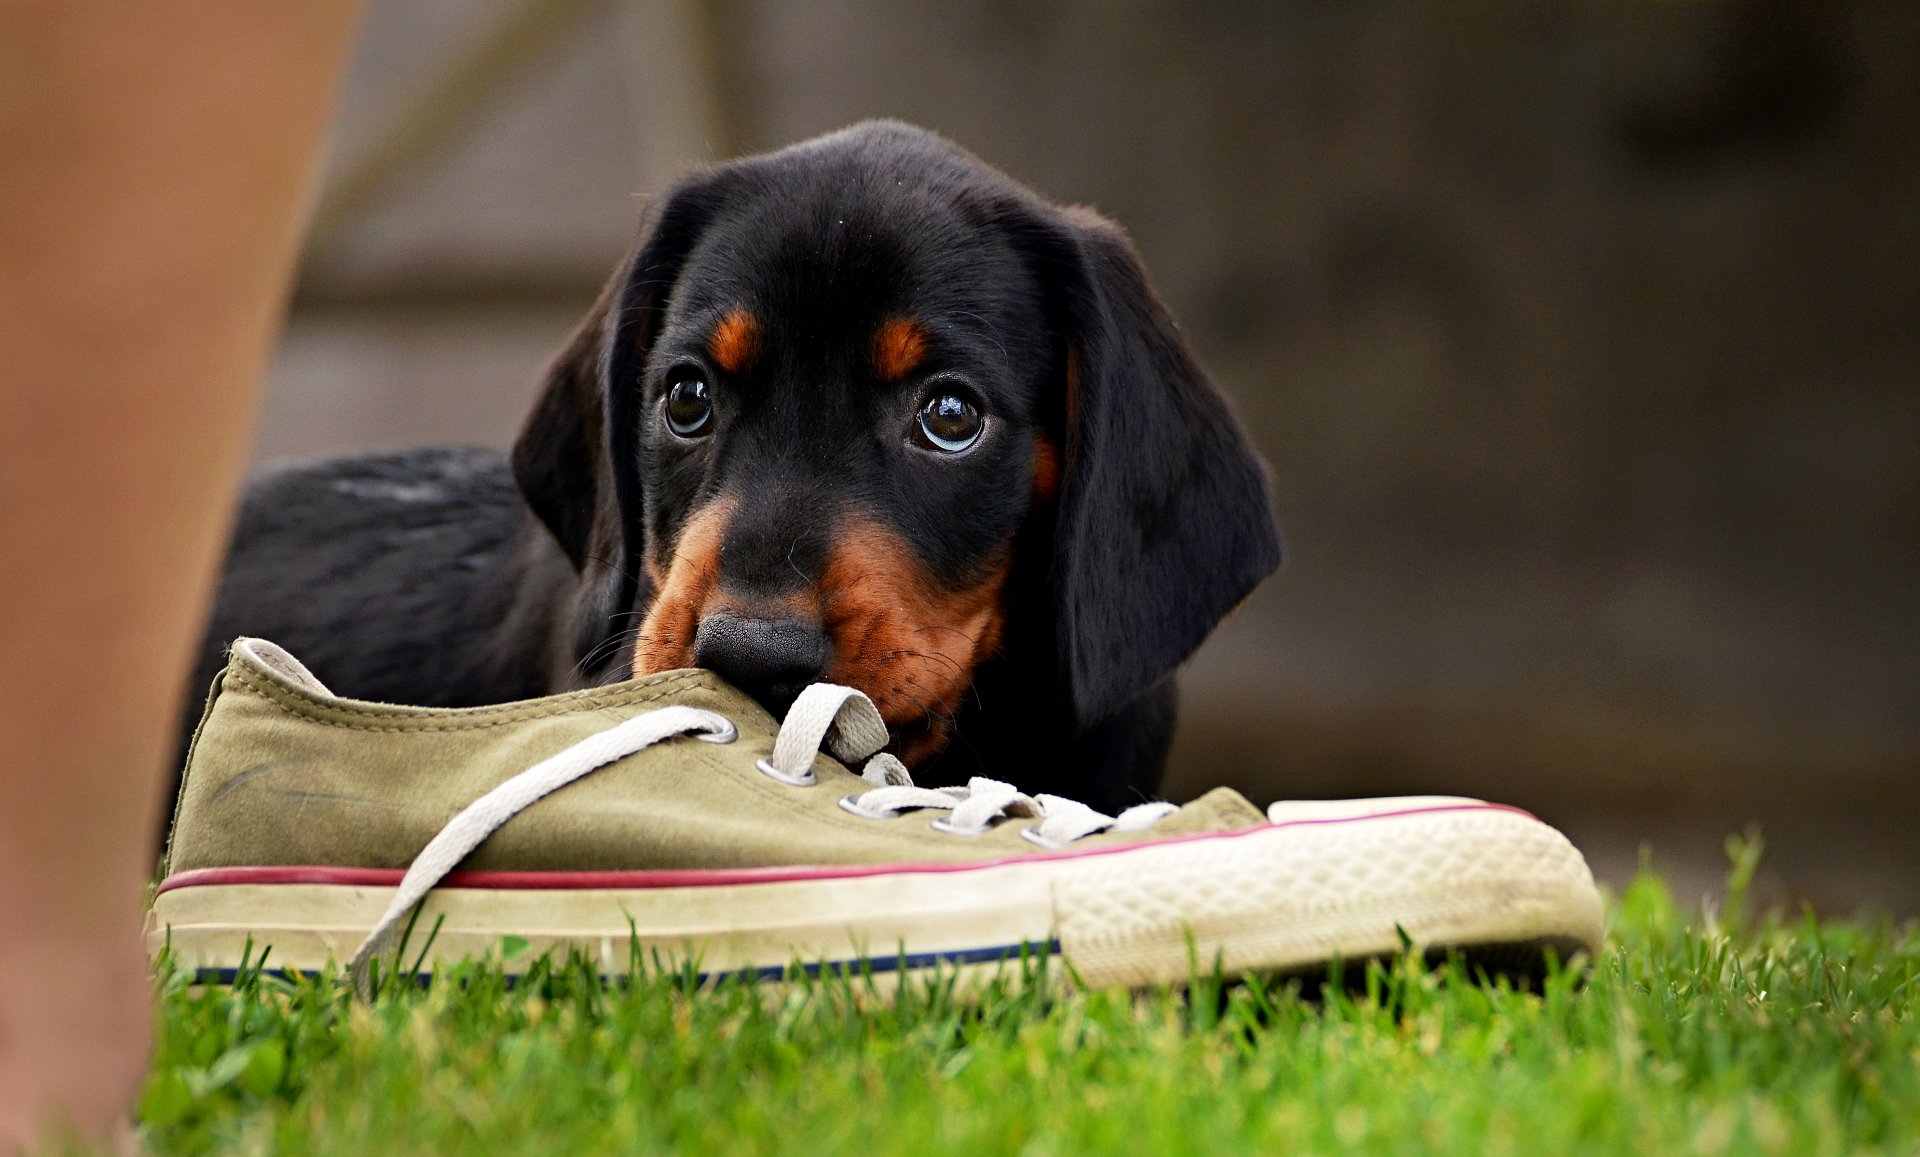 a puppy tastes a Converse shoe